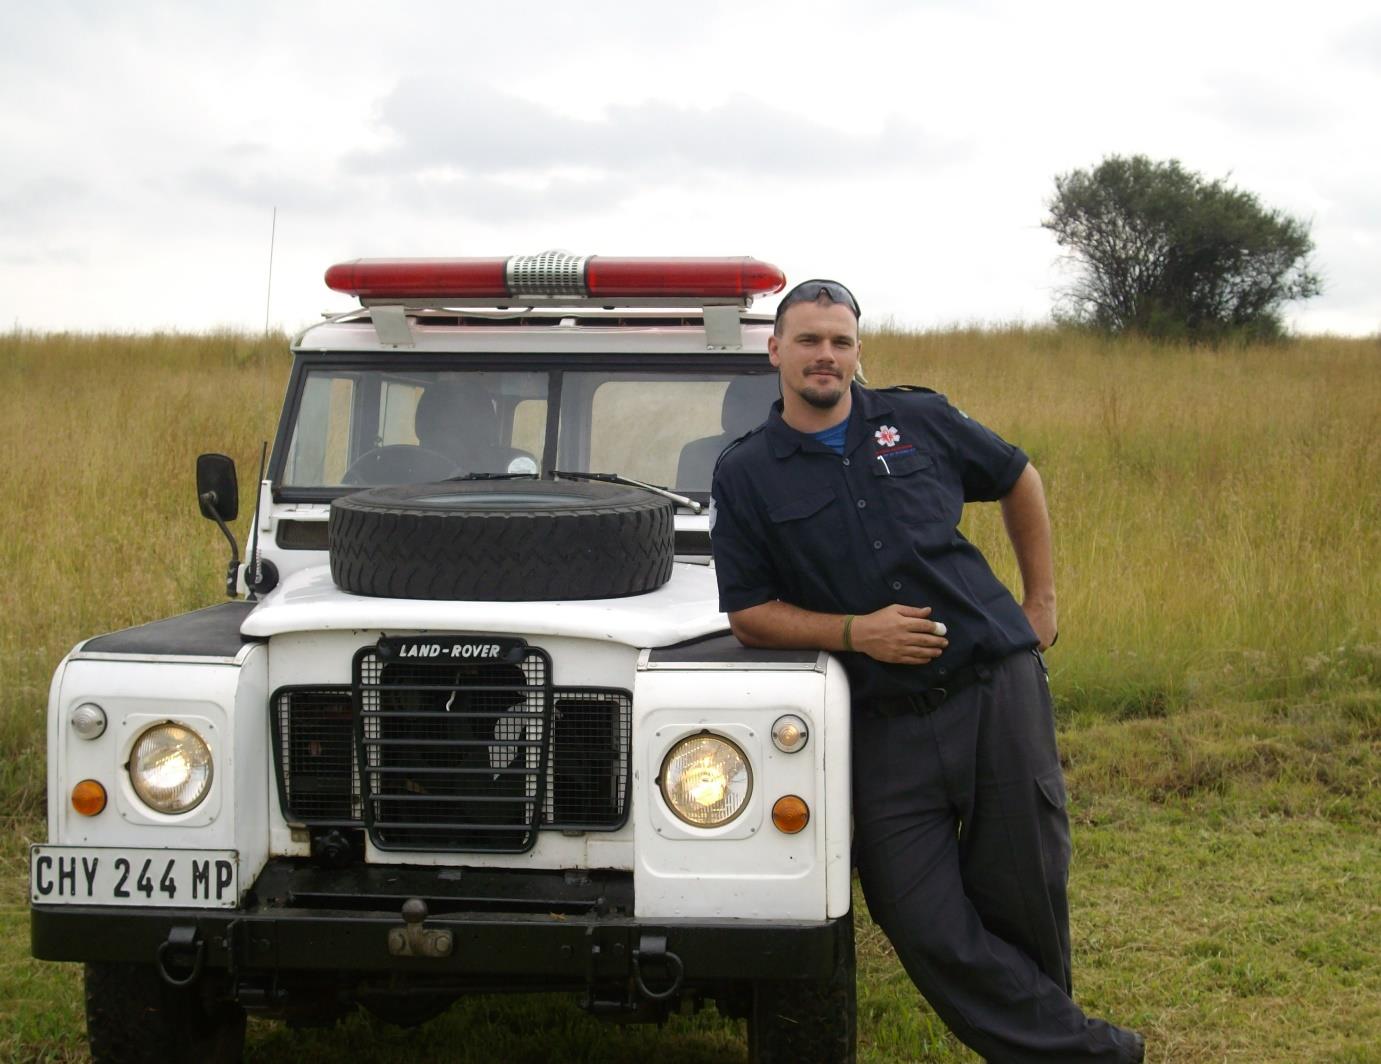 Sűli Zoltán Paramedic Dél-afriaki Köztársaság